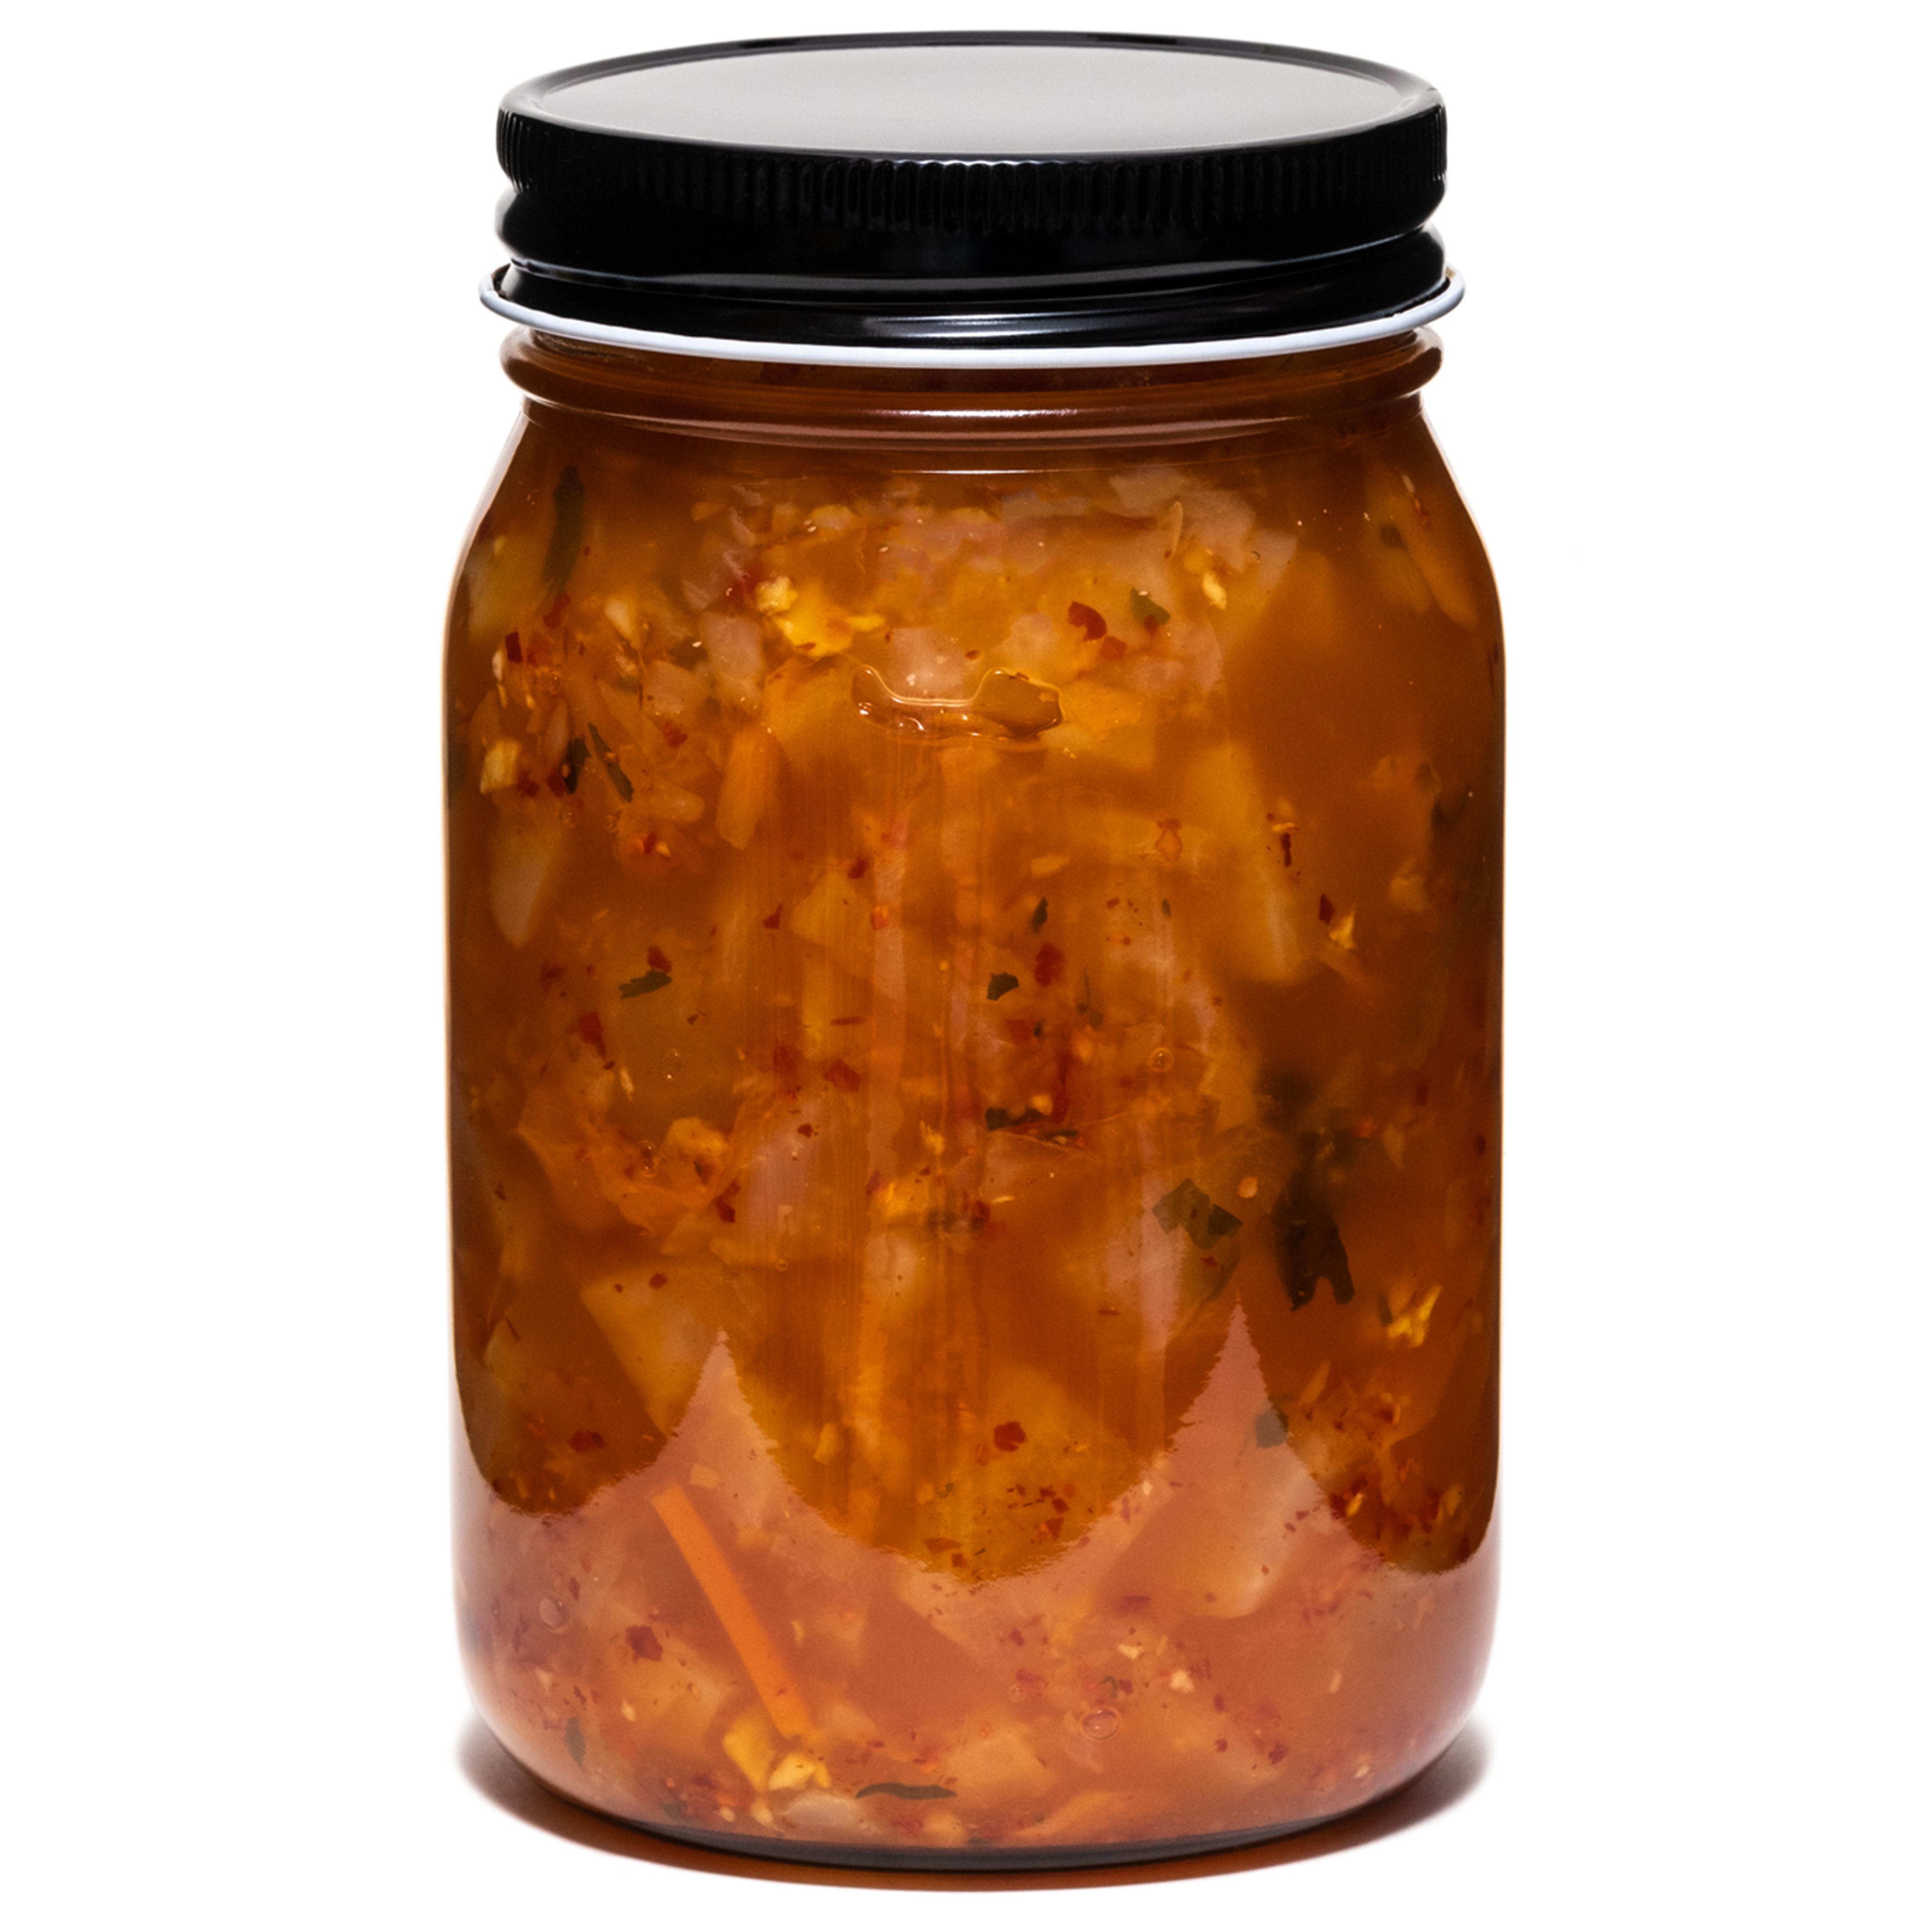 Organic daikon kimchi - Zandunga - Tout cru! Fermentation